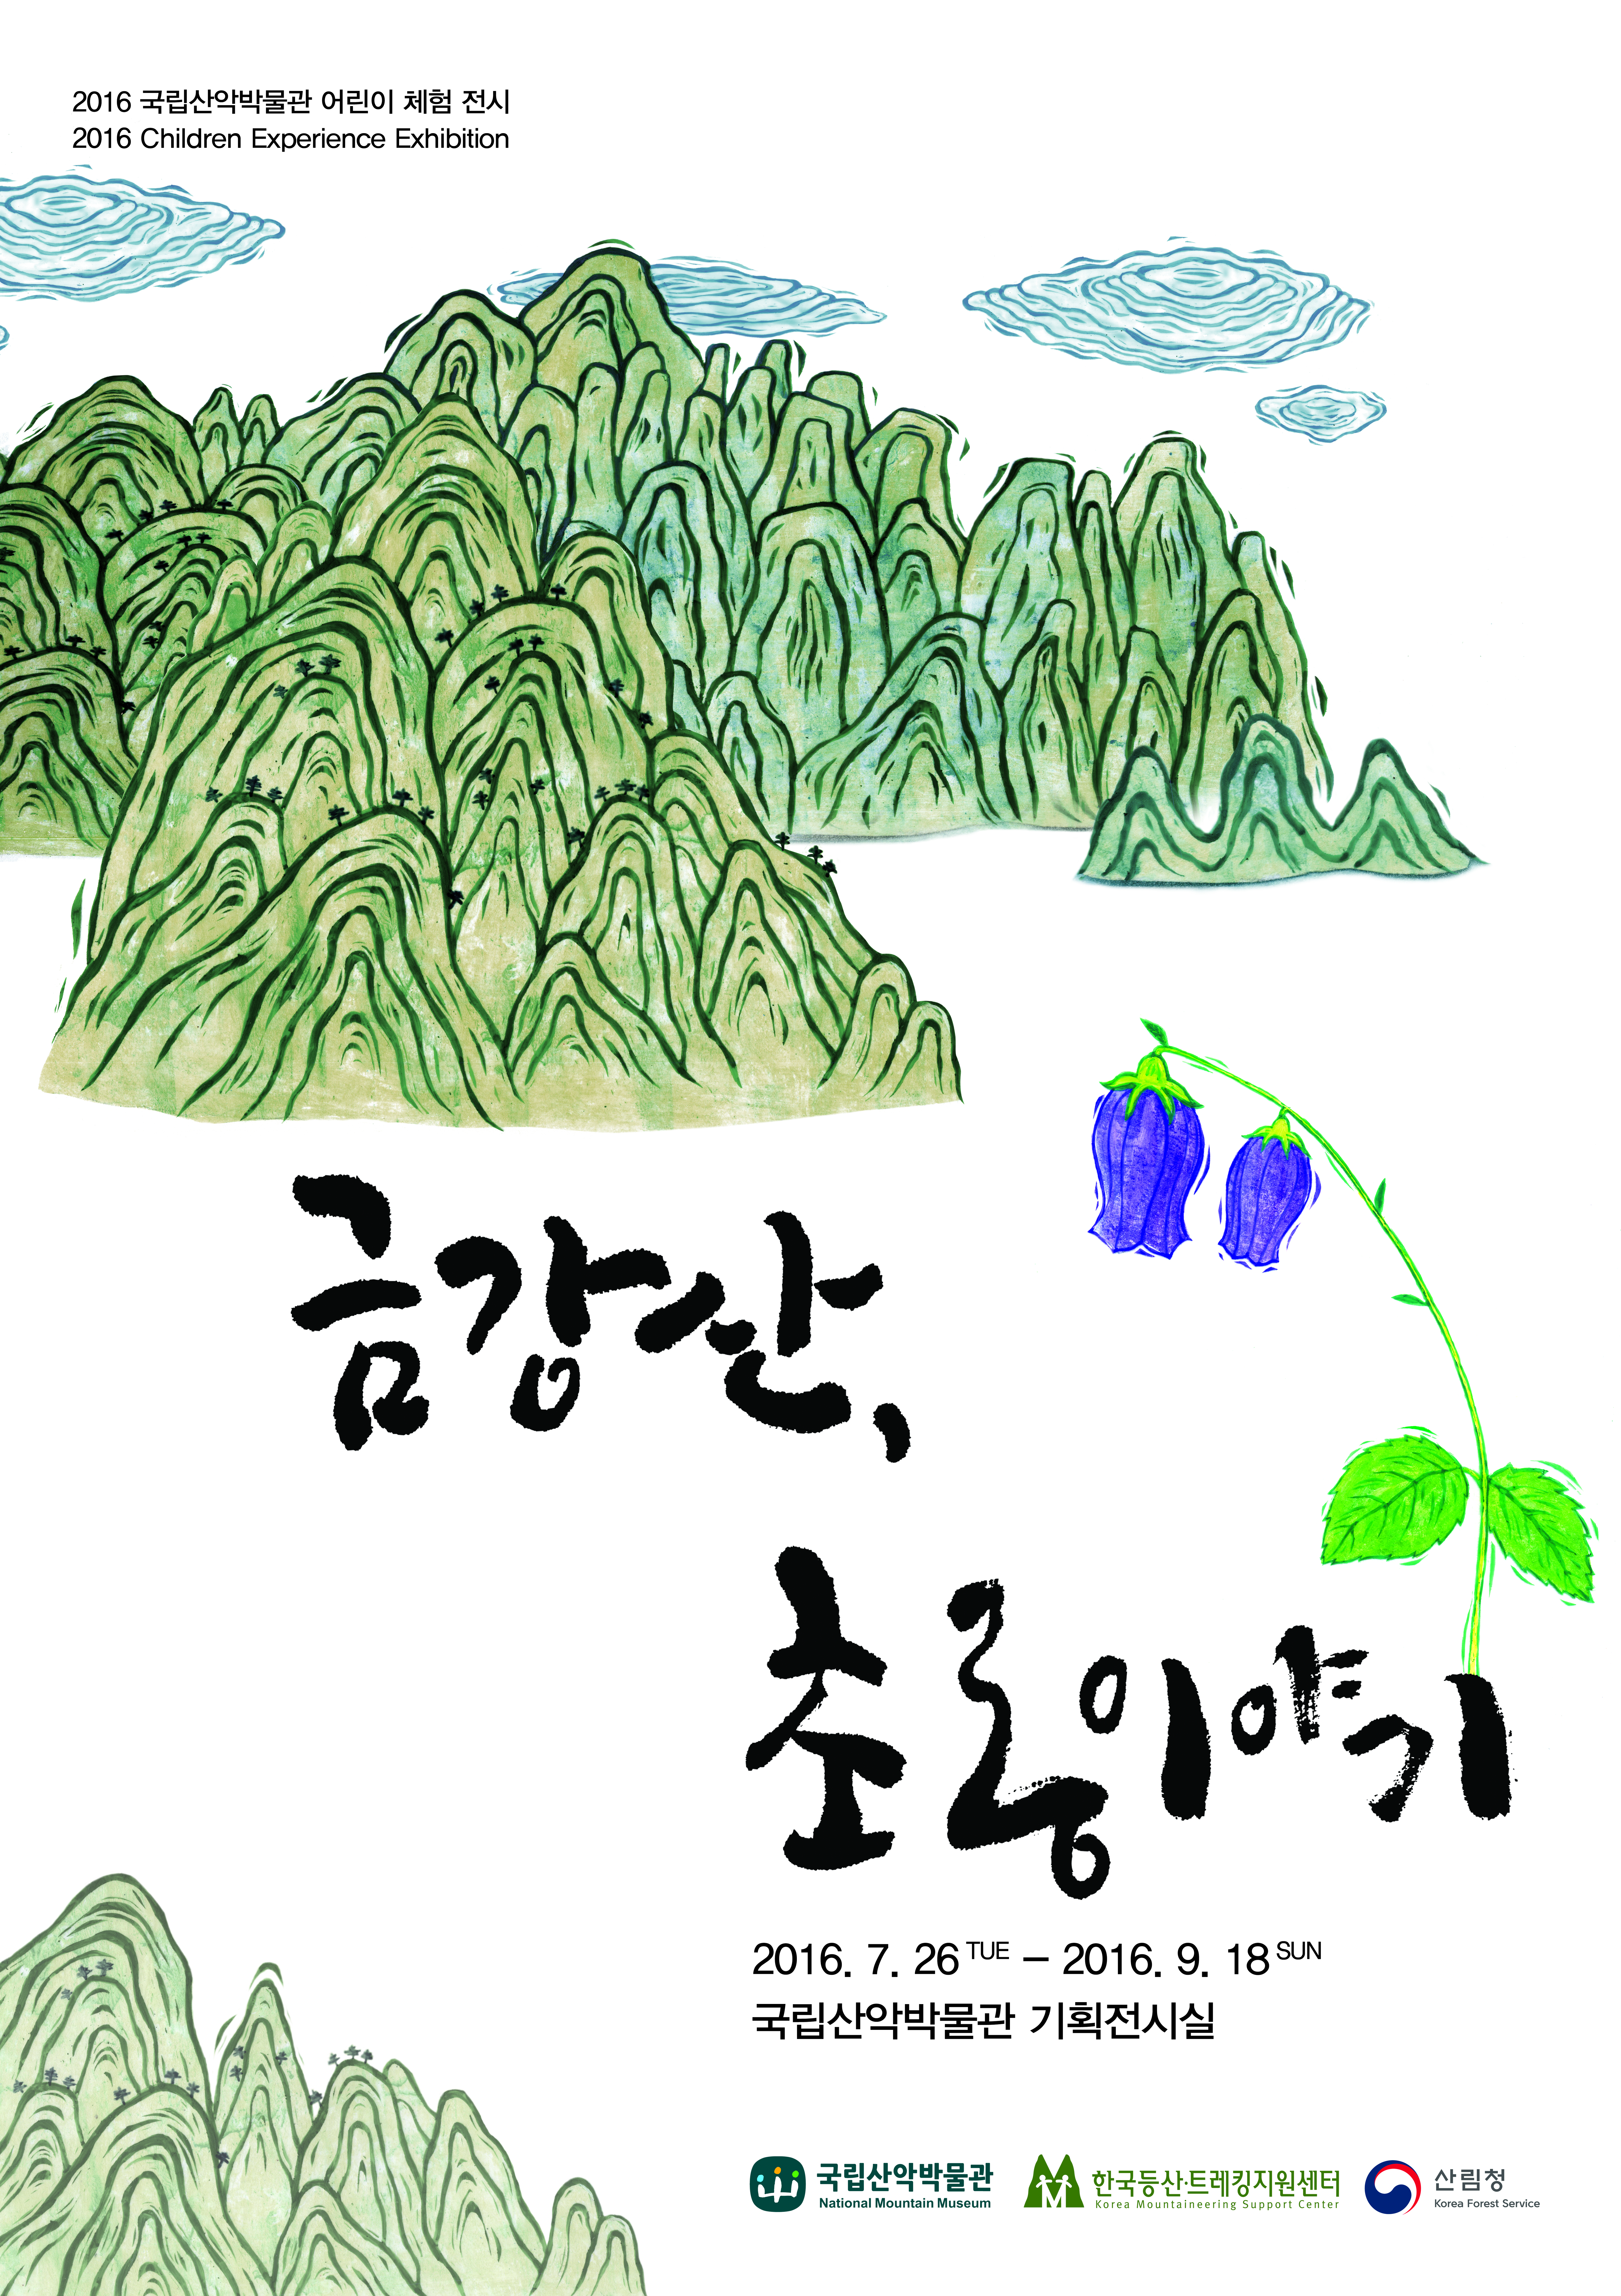 2016 국립산악박물관 기획展 &#39;금강산, 초롱이야기&#39; 개최 안내